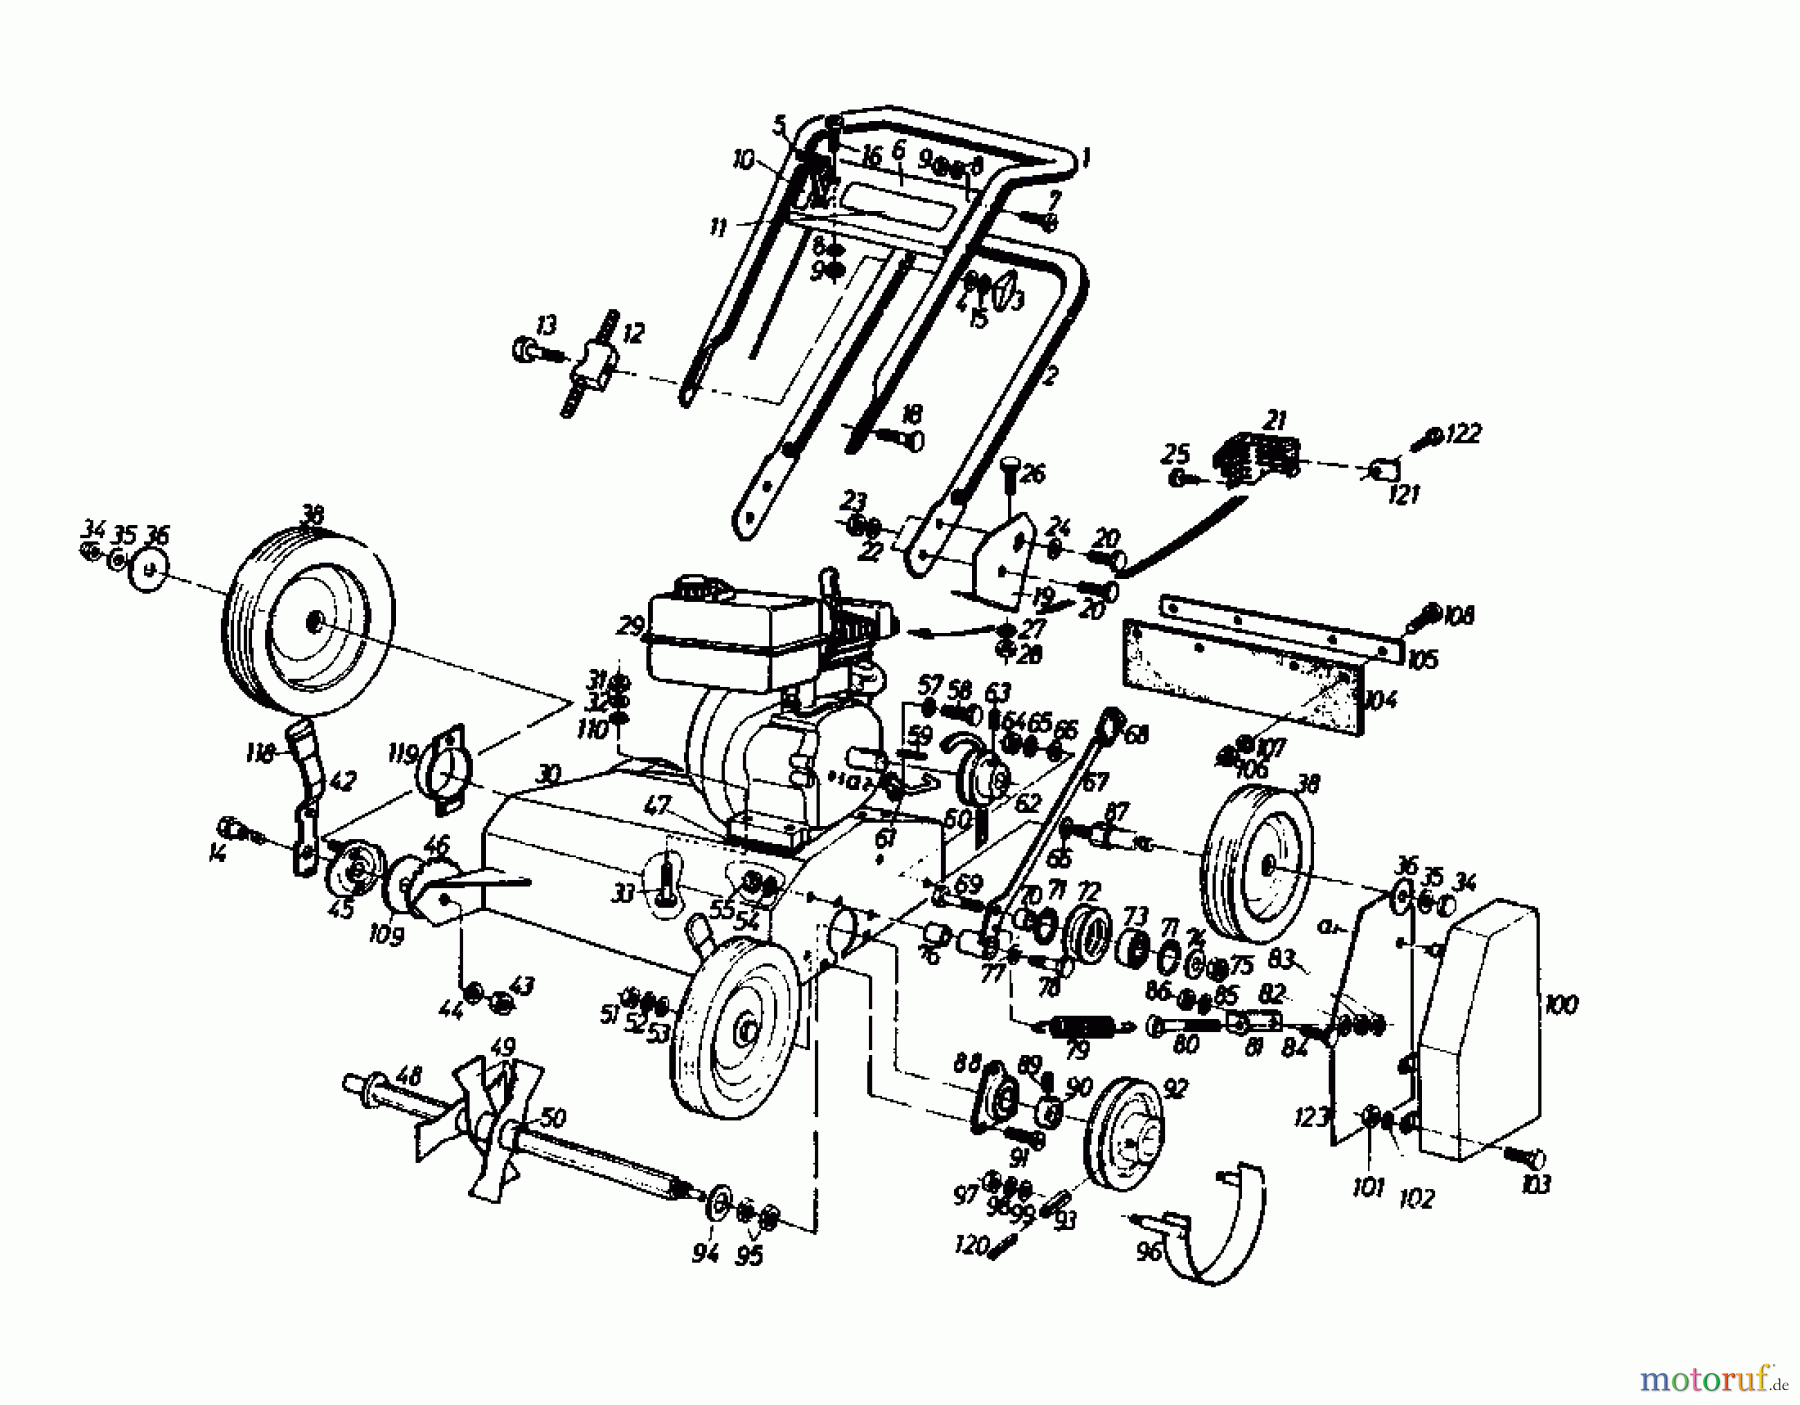  Gutbrod Petrol verticutter VS 50 A 00053.01  (1988) Basic machine